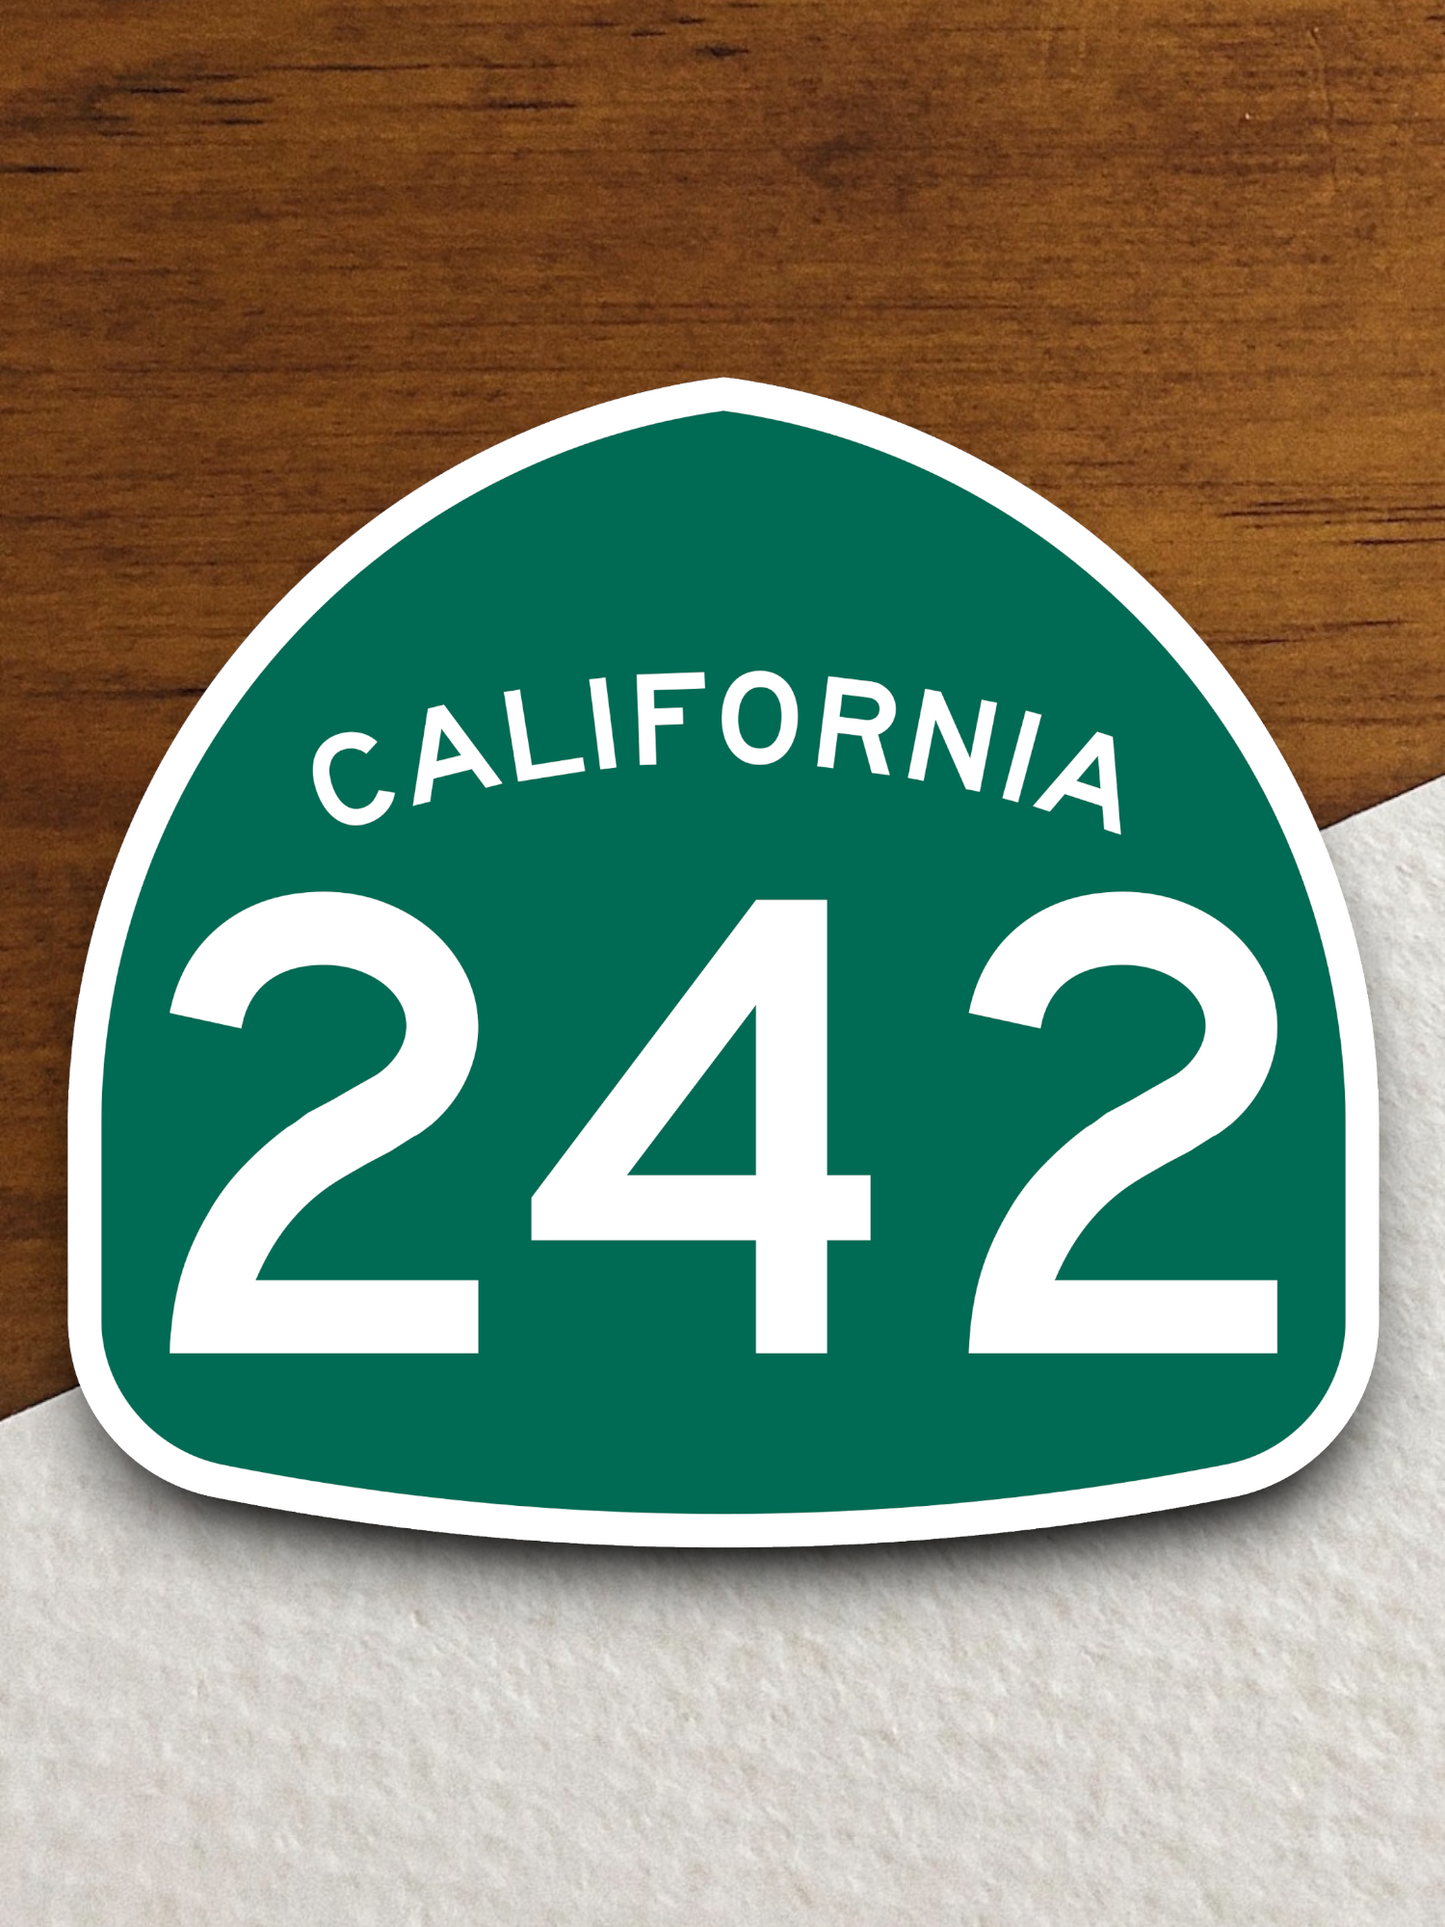 California State Route 242 Sticker